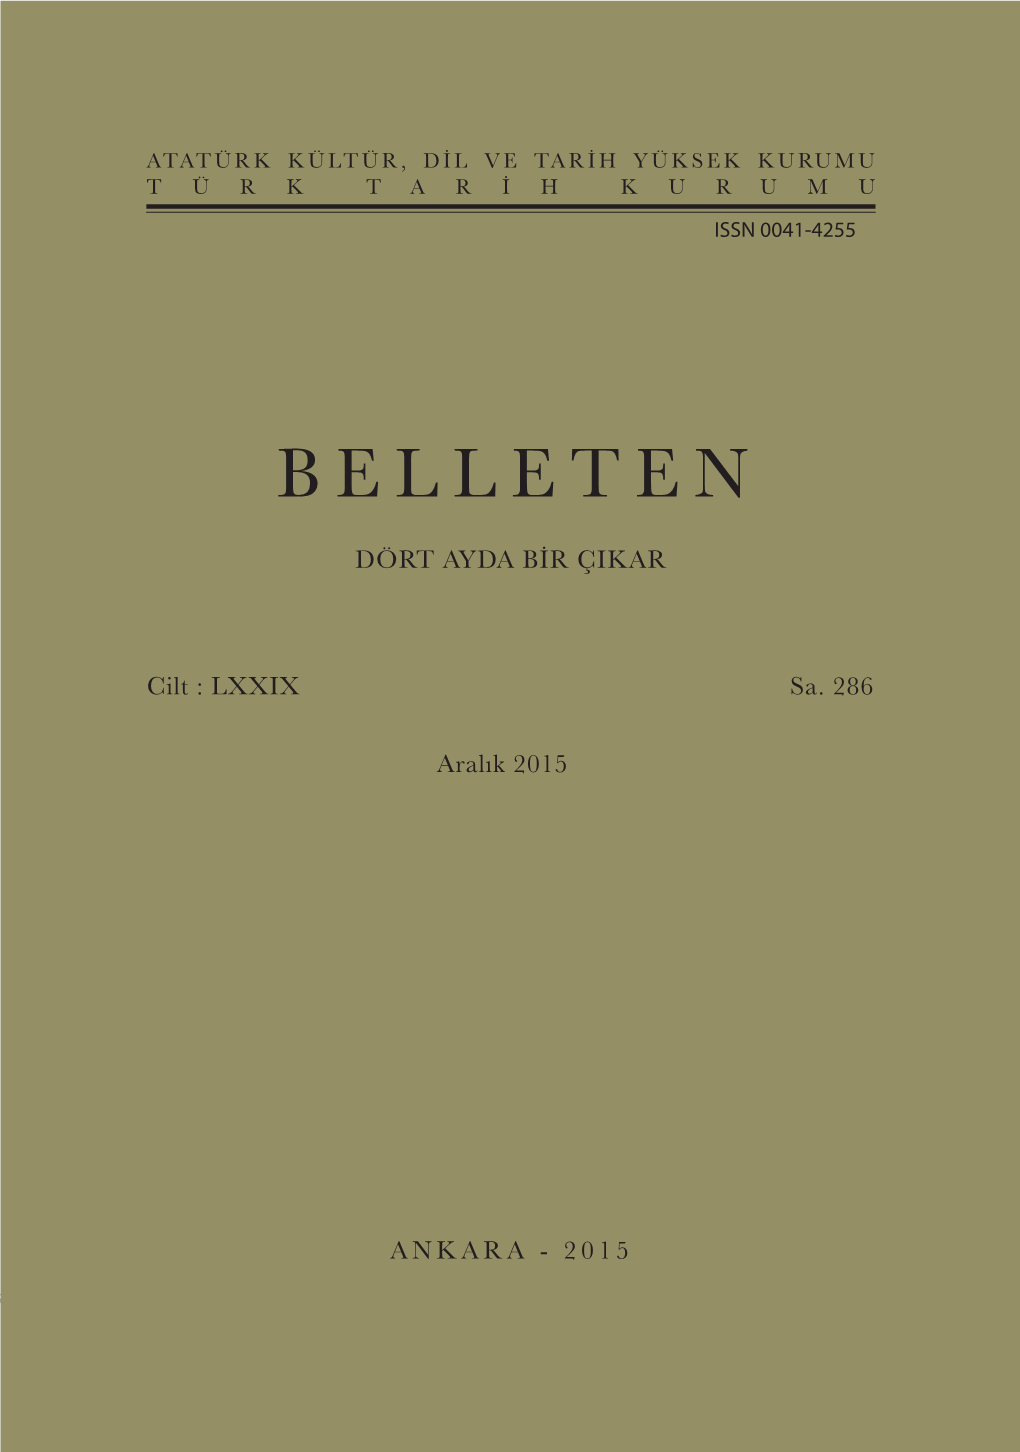 Belleten E Belleten Periodical Published Every Four Months Dört Ayda Bir Çikar